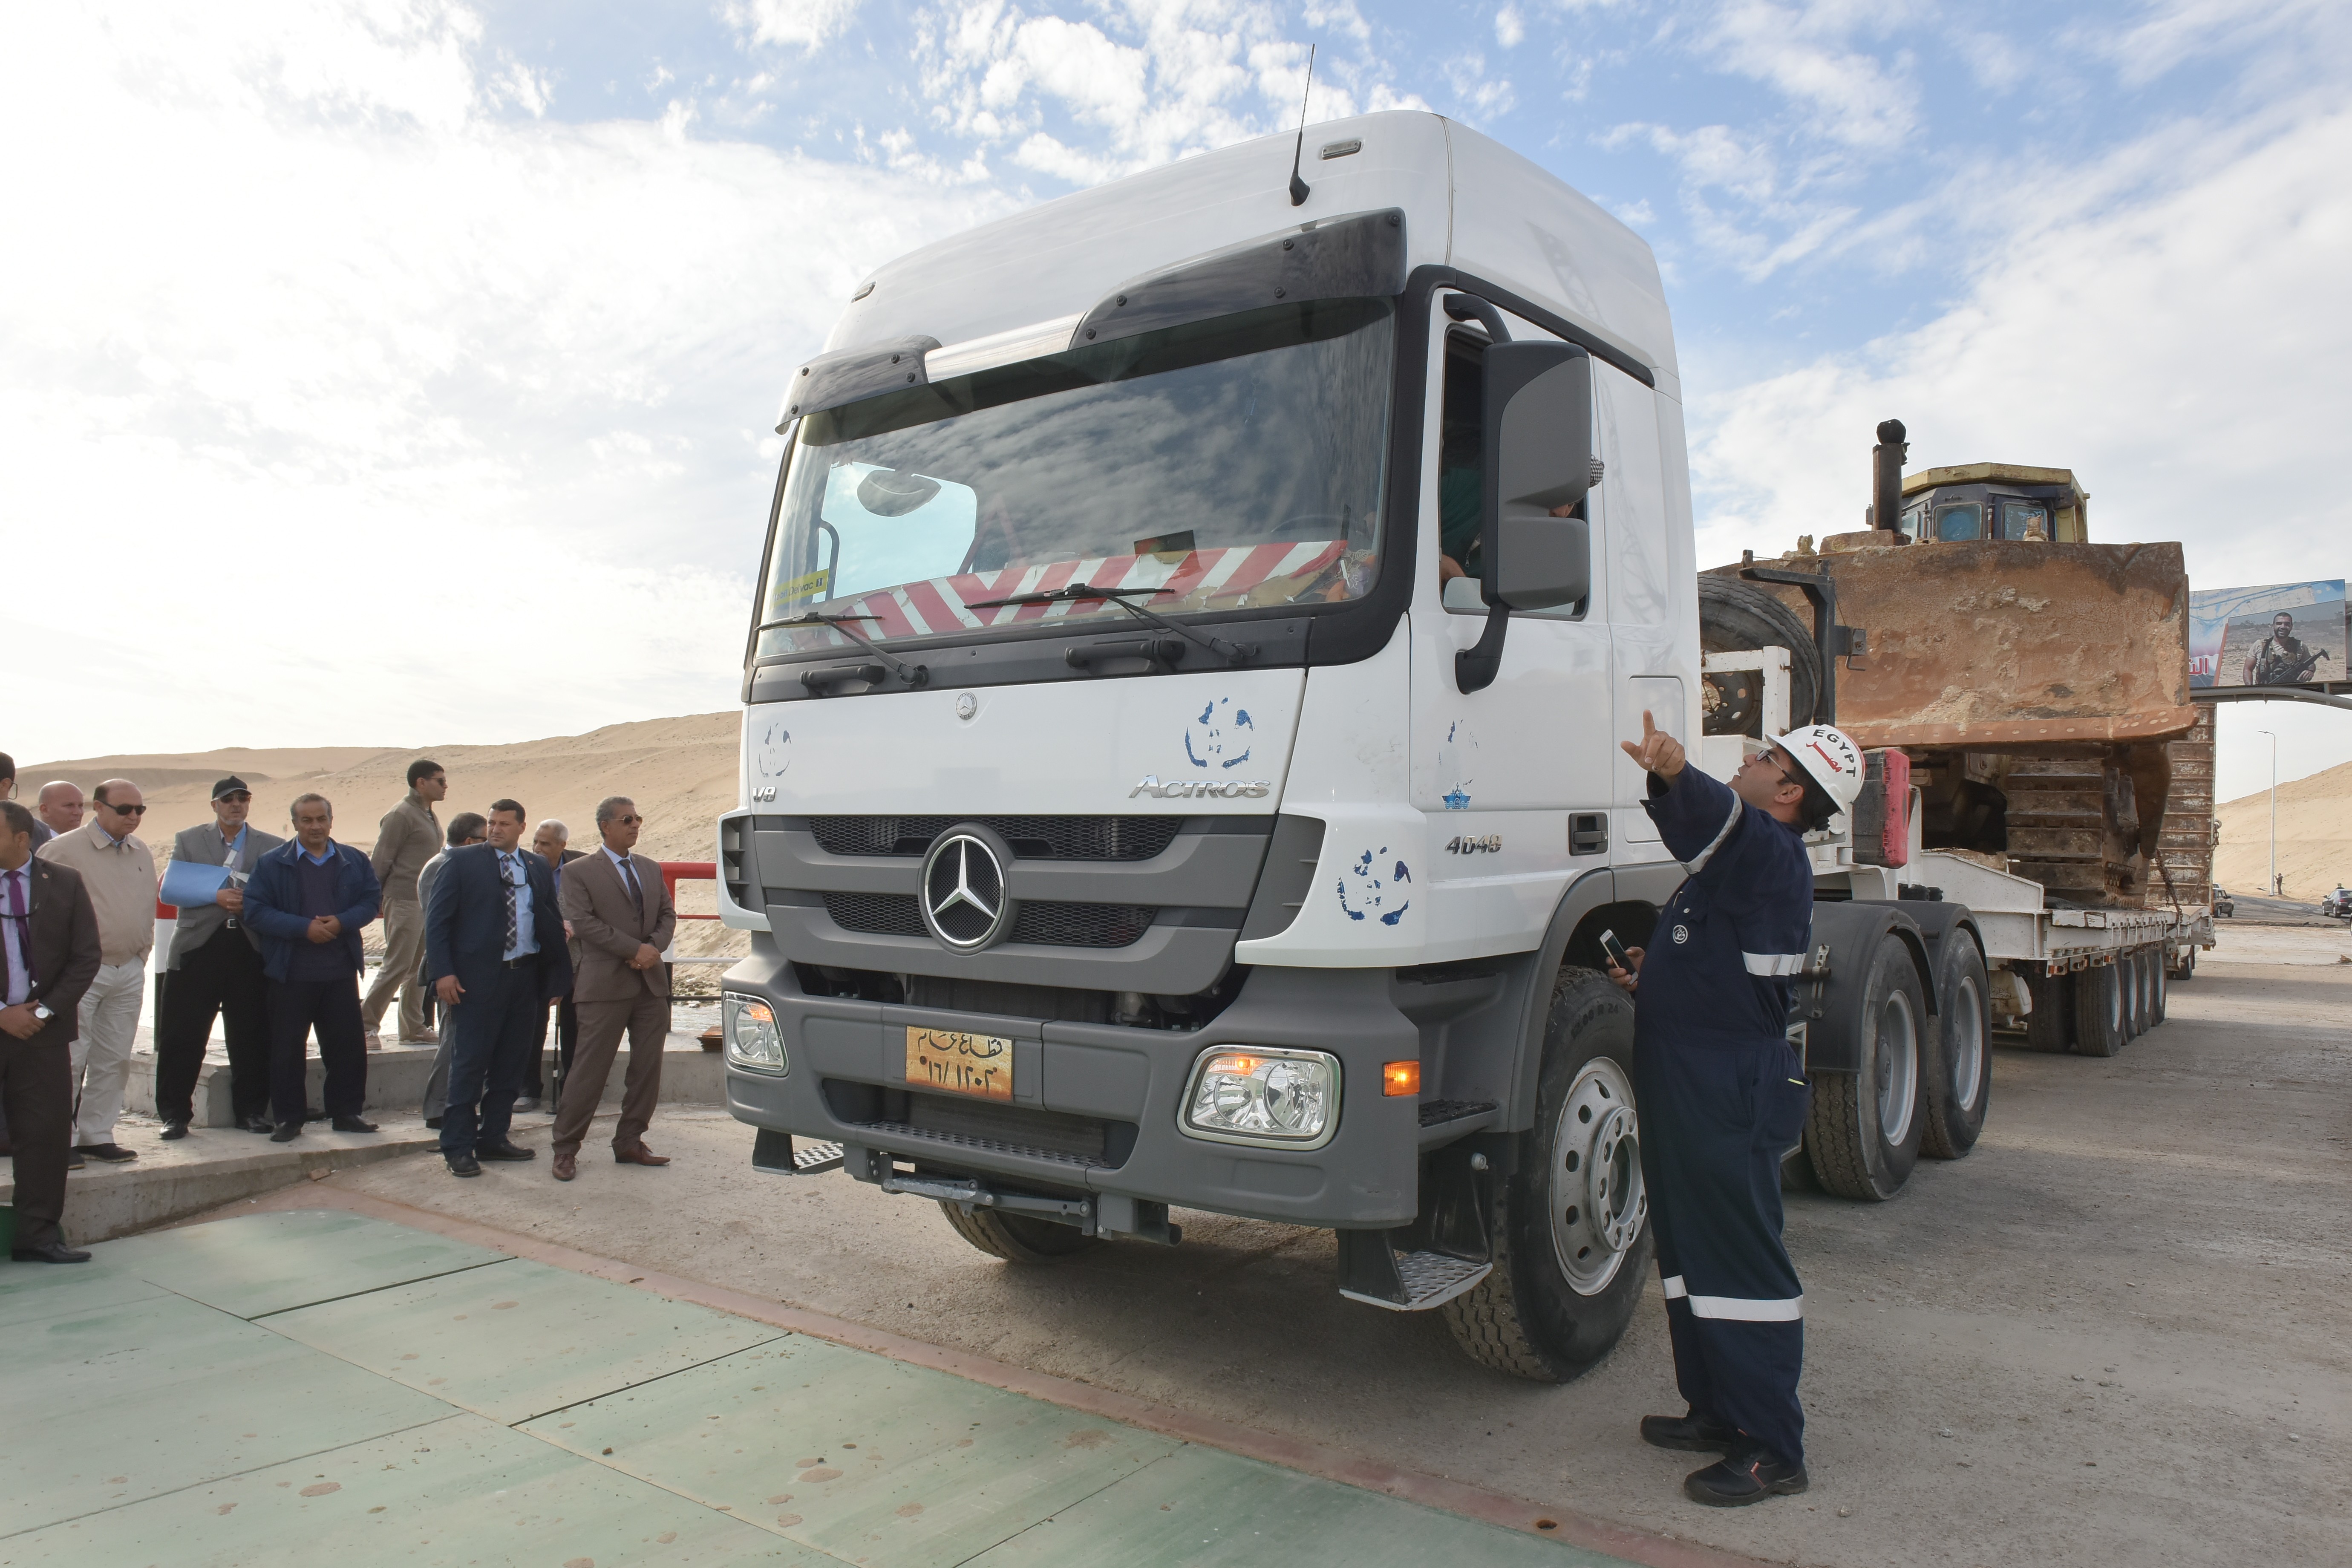 4- سيارة نقل ثقيل تحمل أحد اللوادر الكبيرة  بحمولة كلية 76 طنا